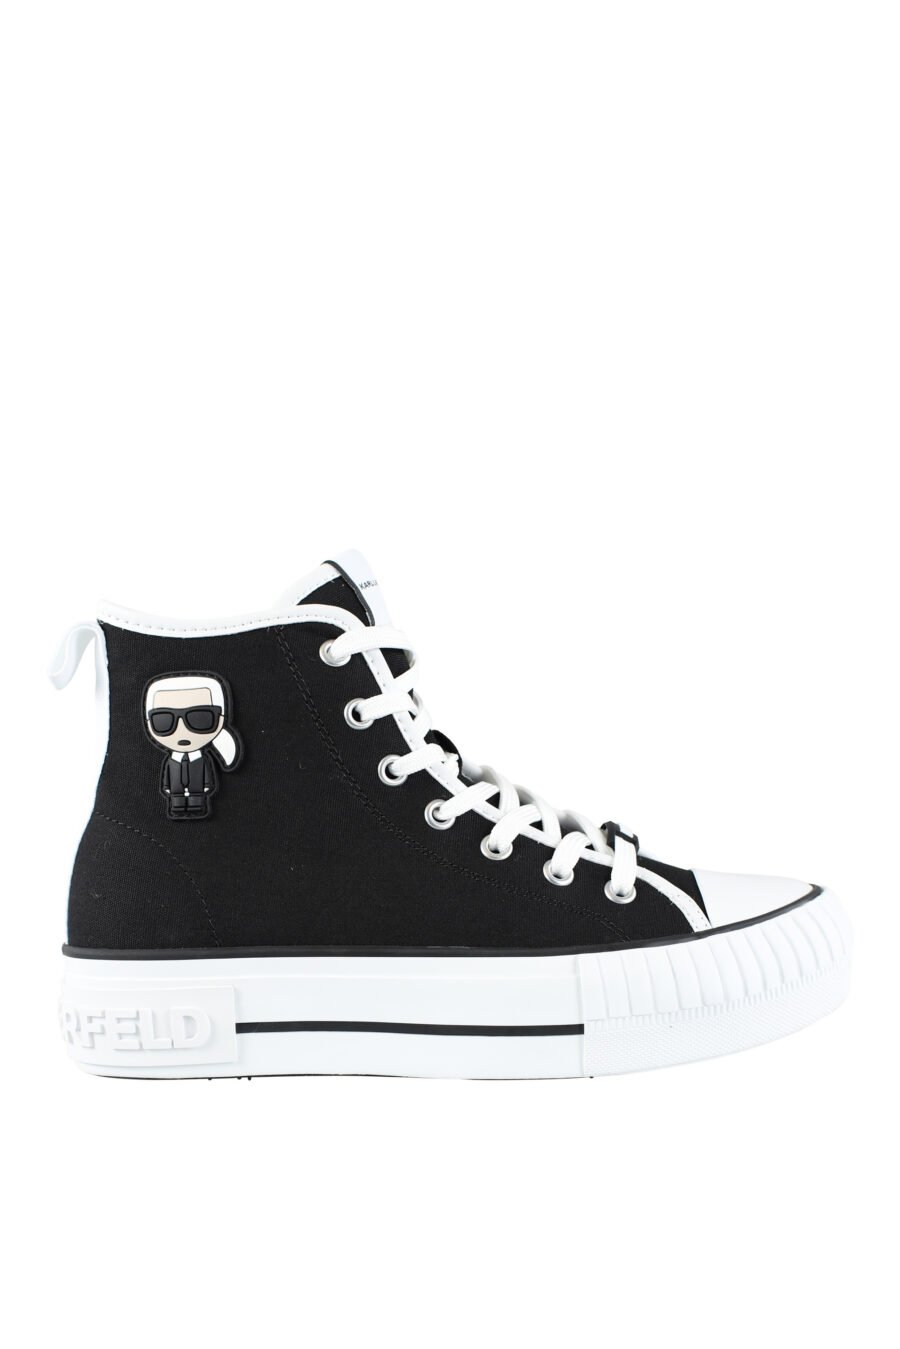 Zapatillas altas negras estilo converse con logo "karl" en goma - IMG 9580